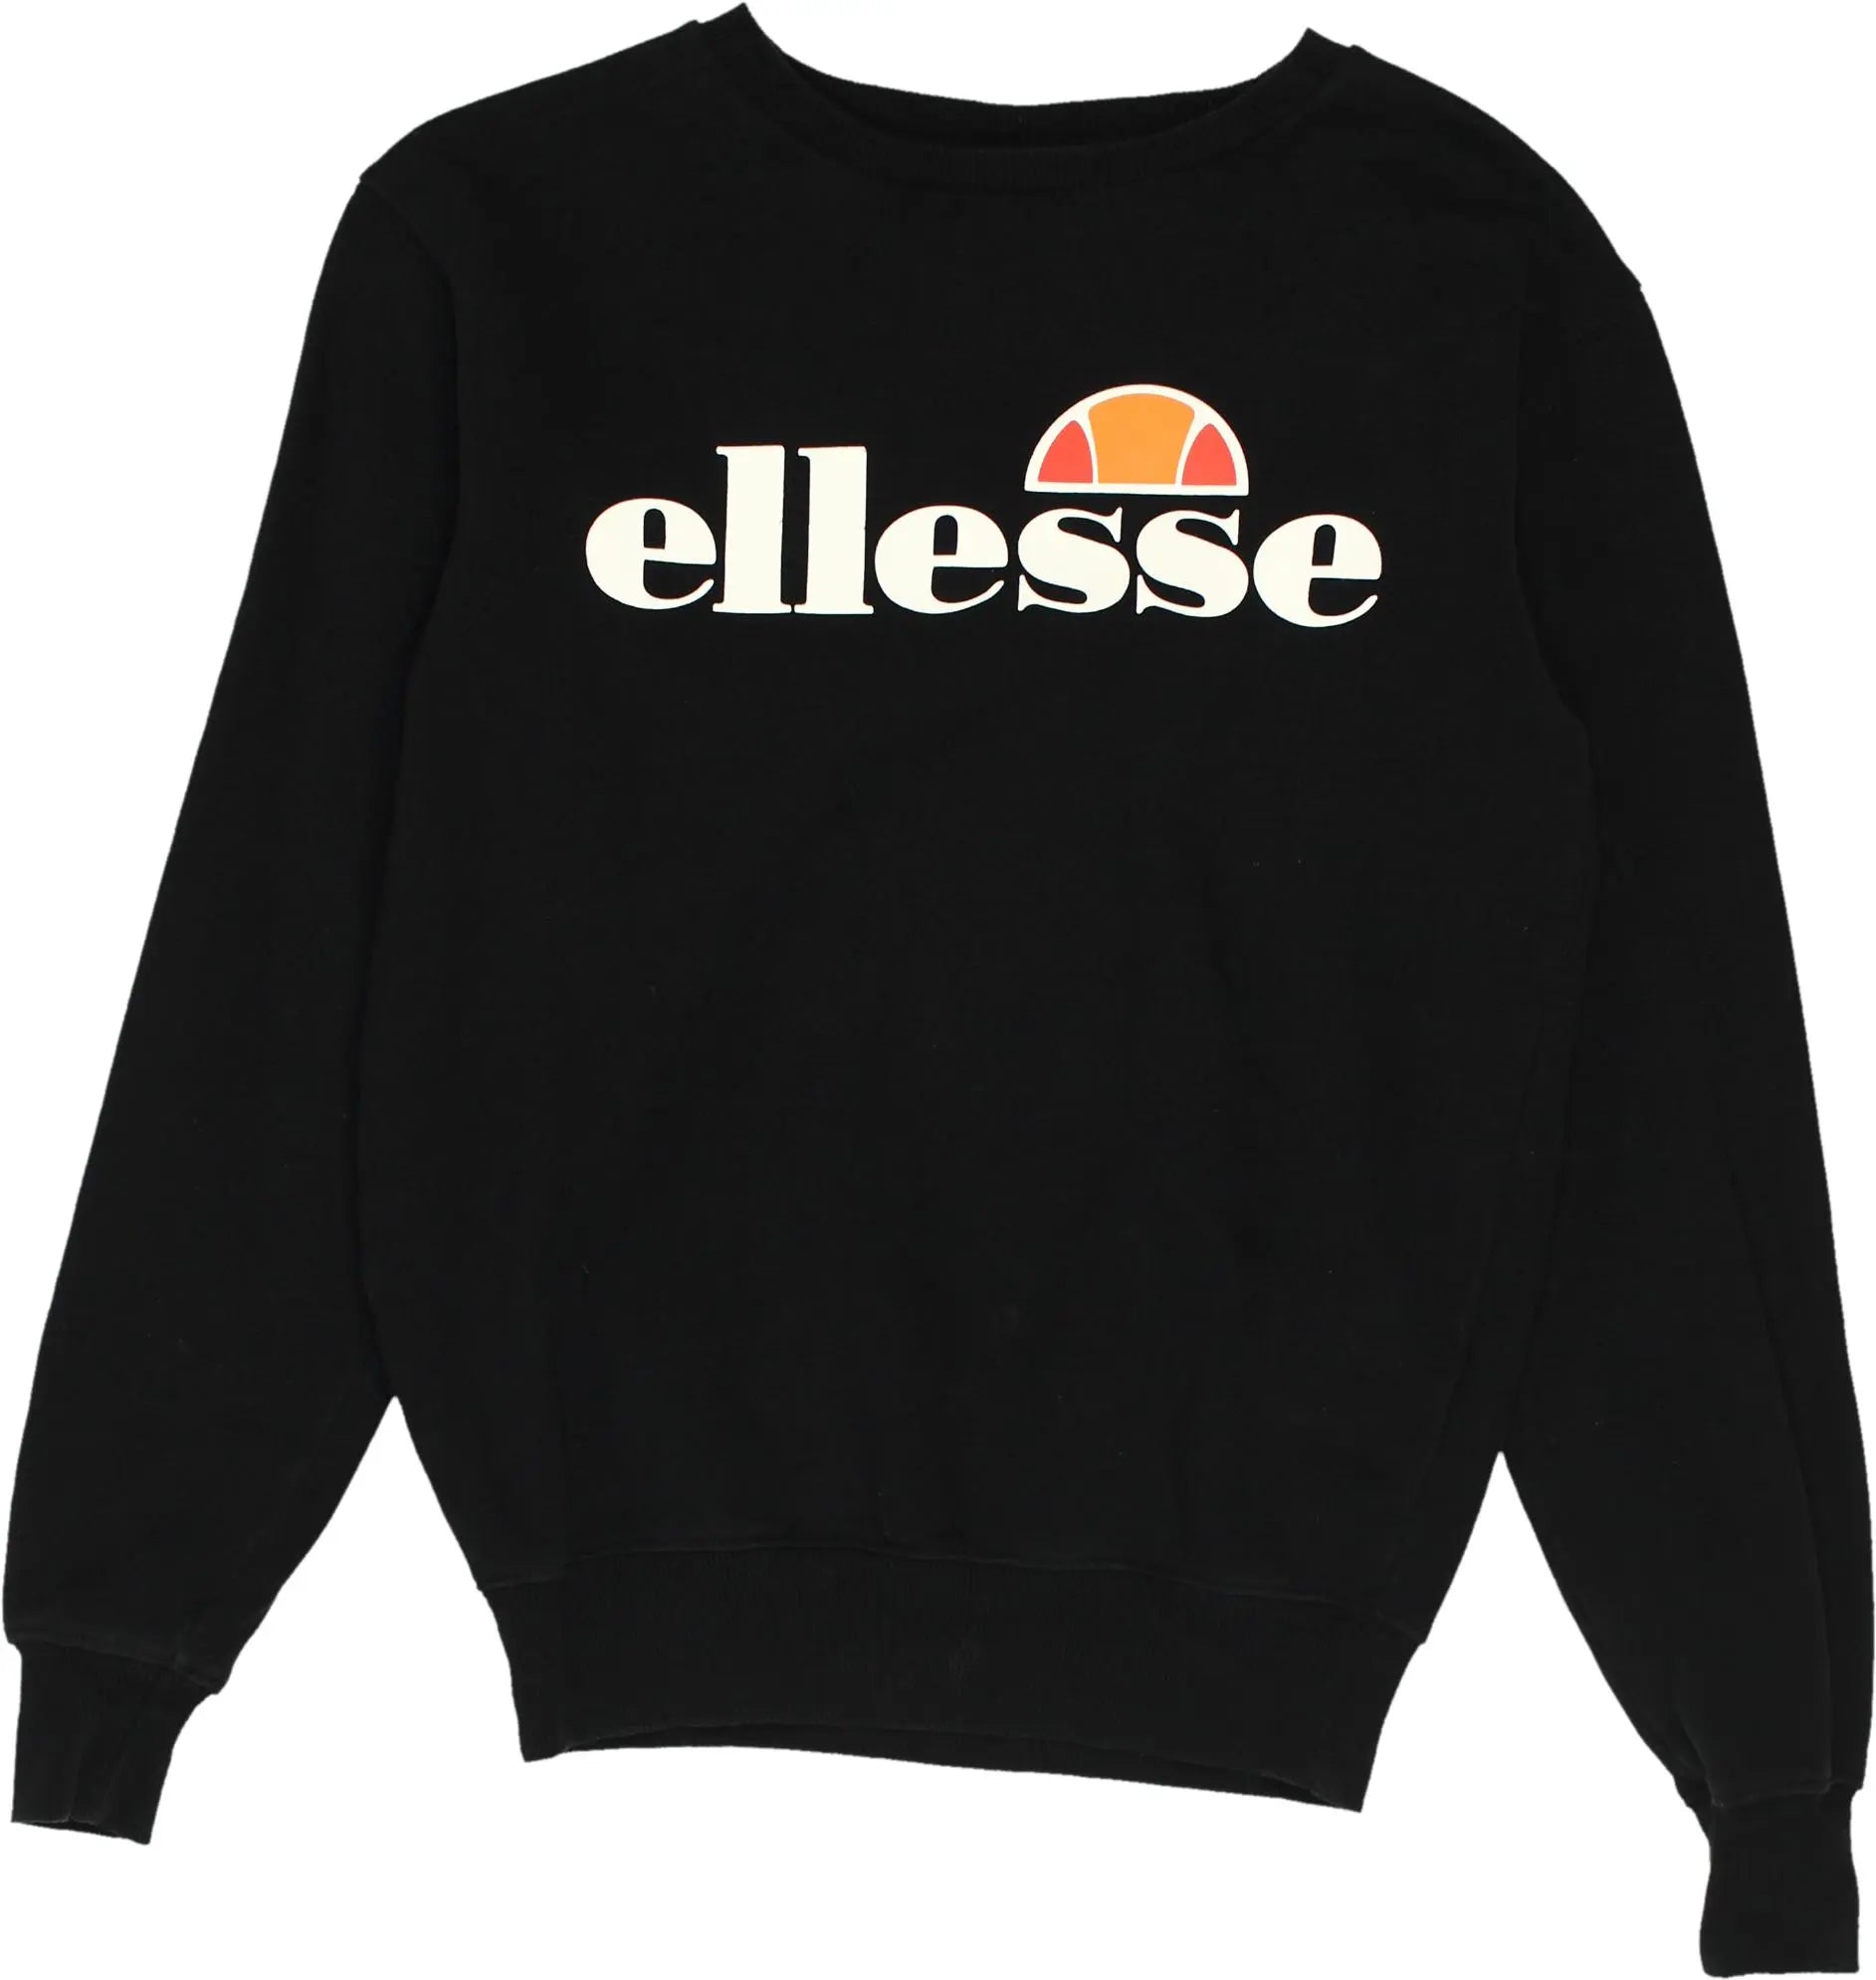 Ellesse - Black Ellesse sweater- ThriftTale.com - Vintage and second handclothing